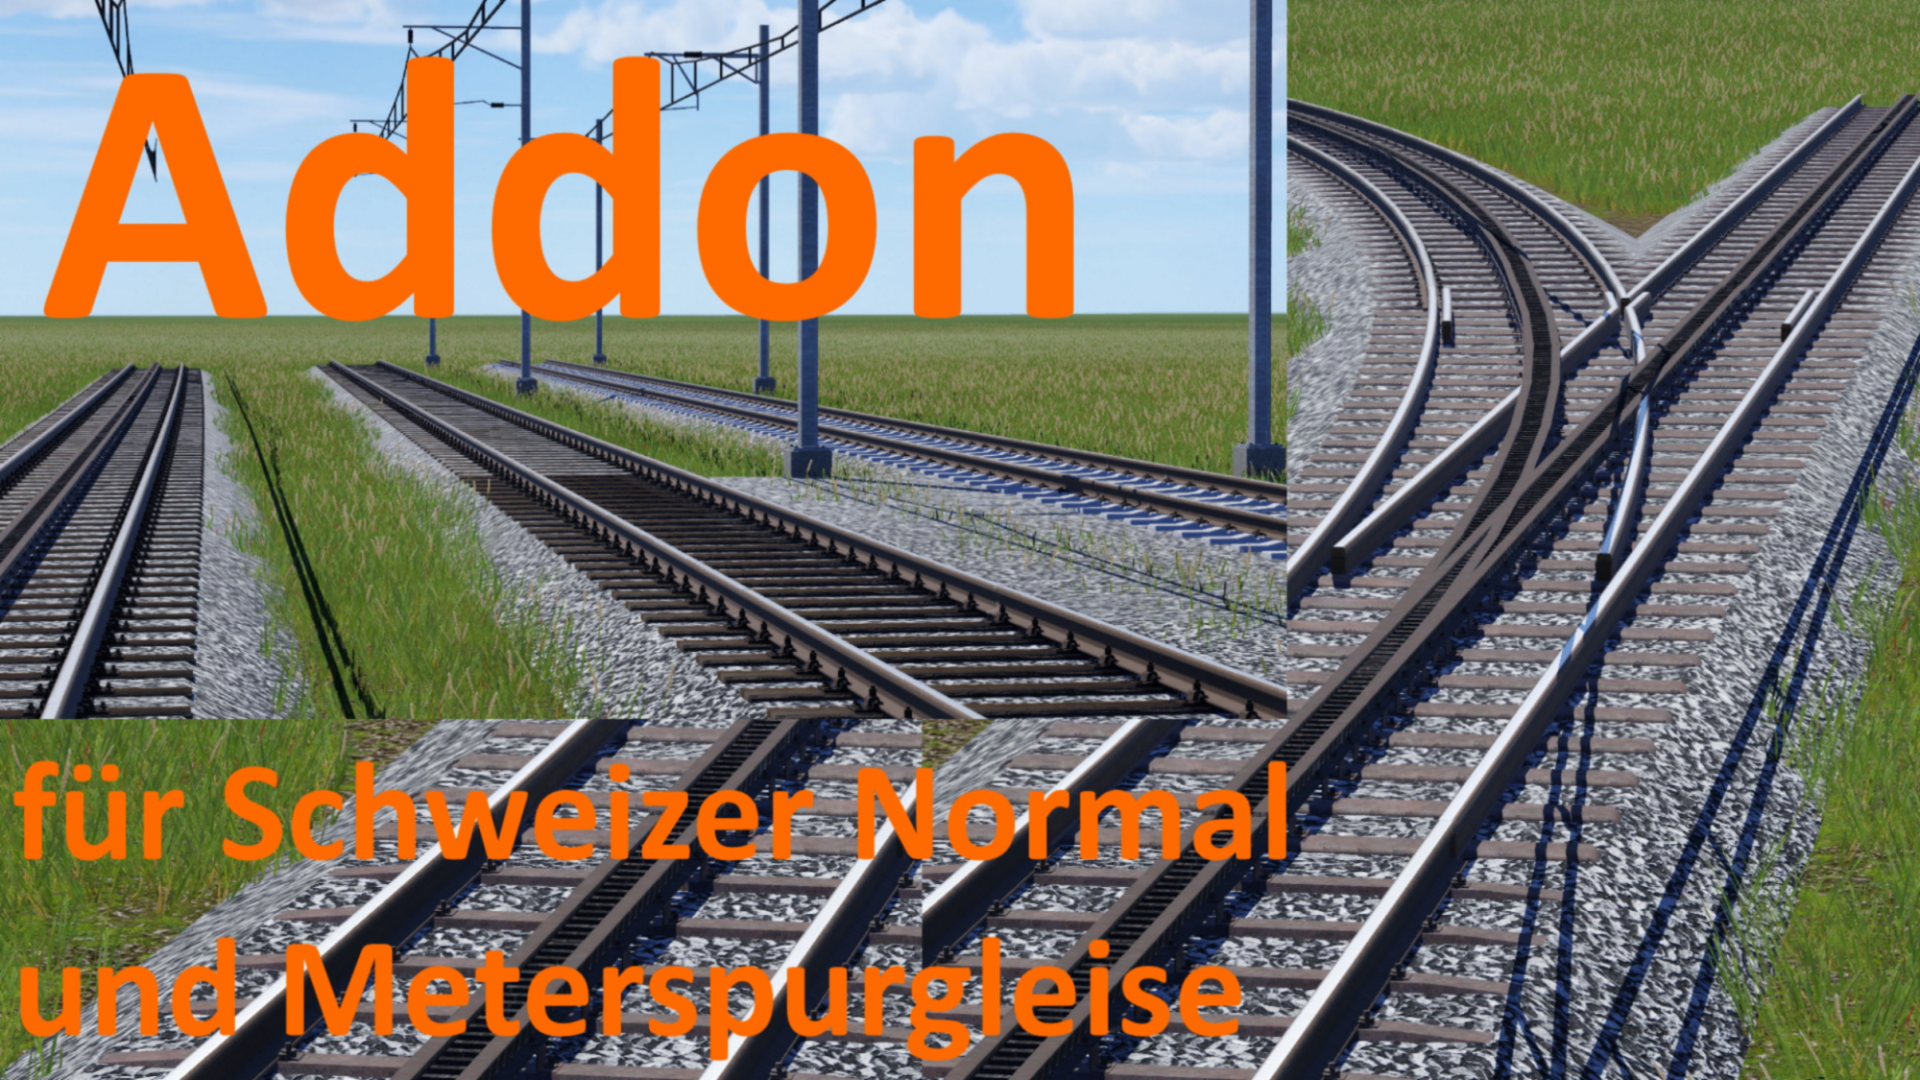 Addon für Schweizer Normal und Meterspurgleise erschienen